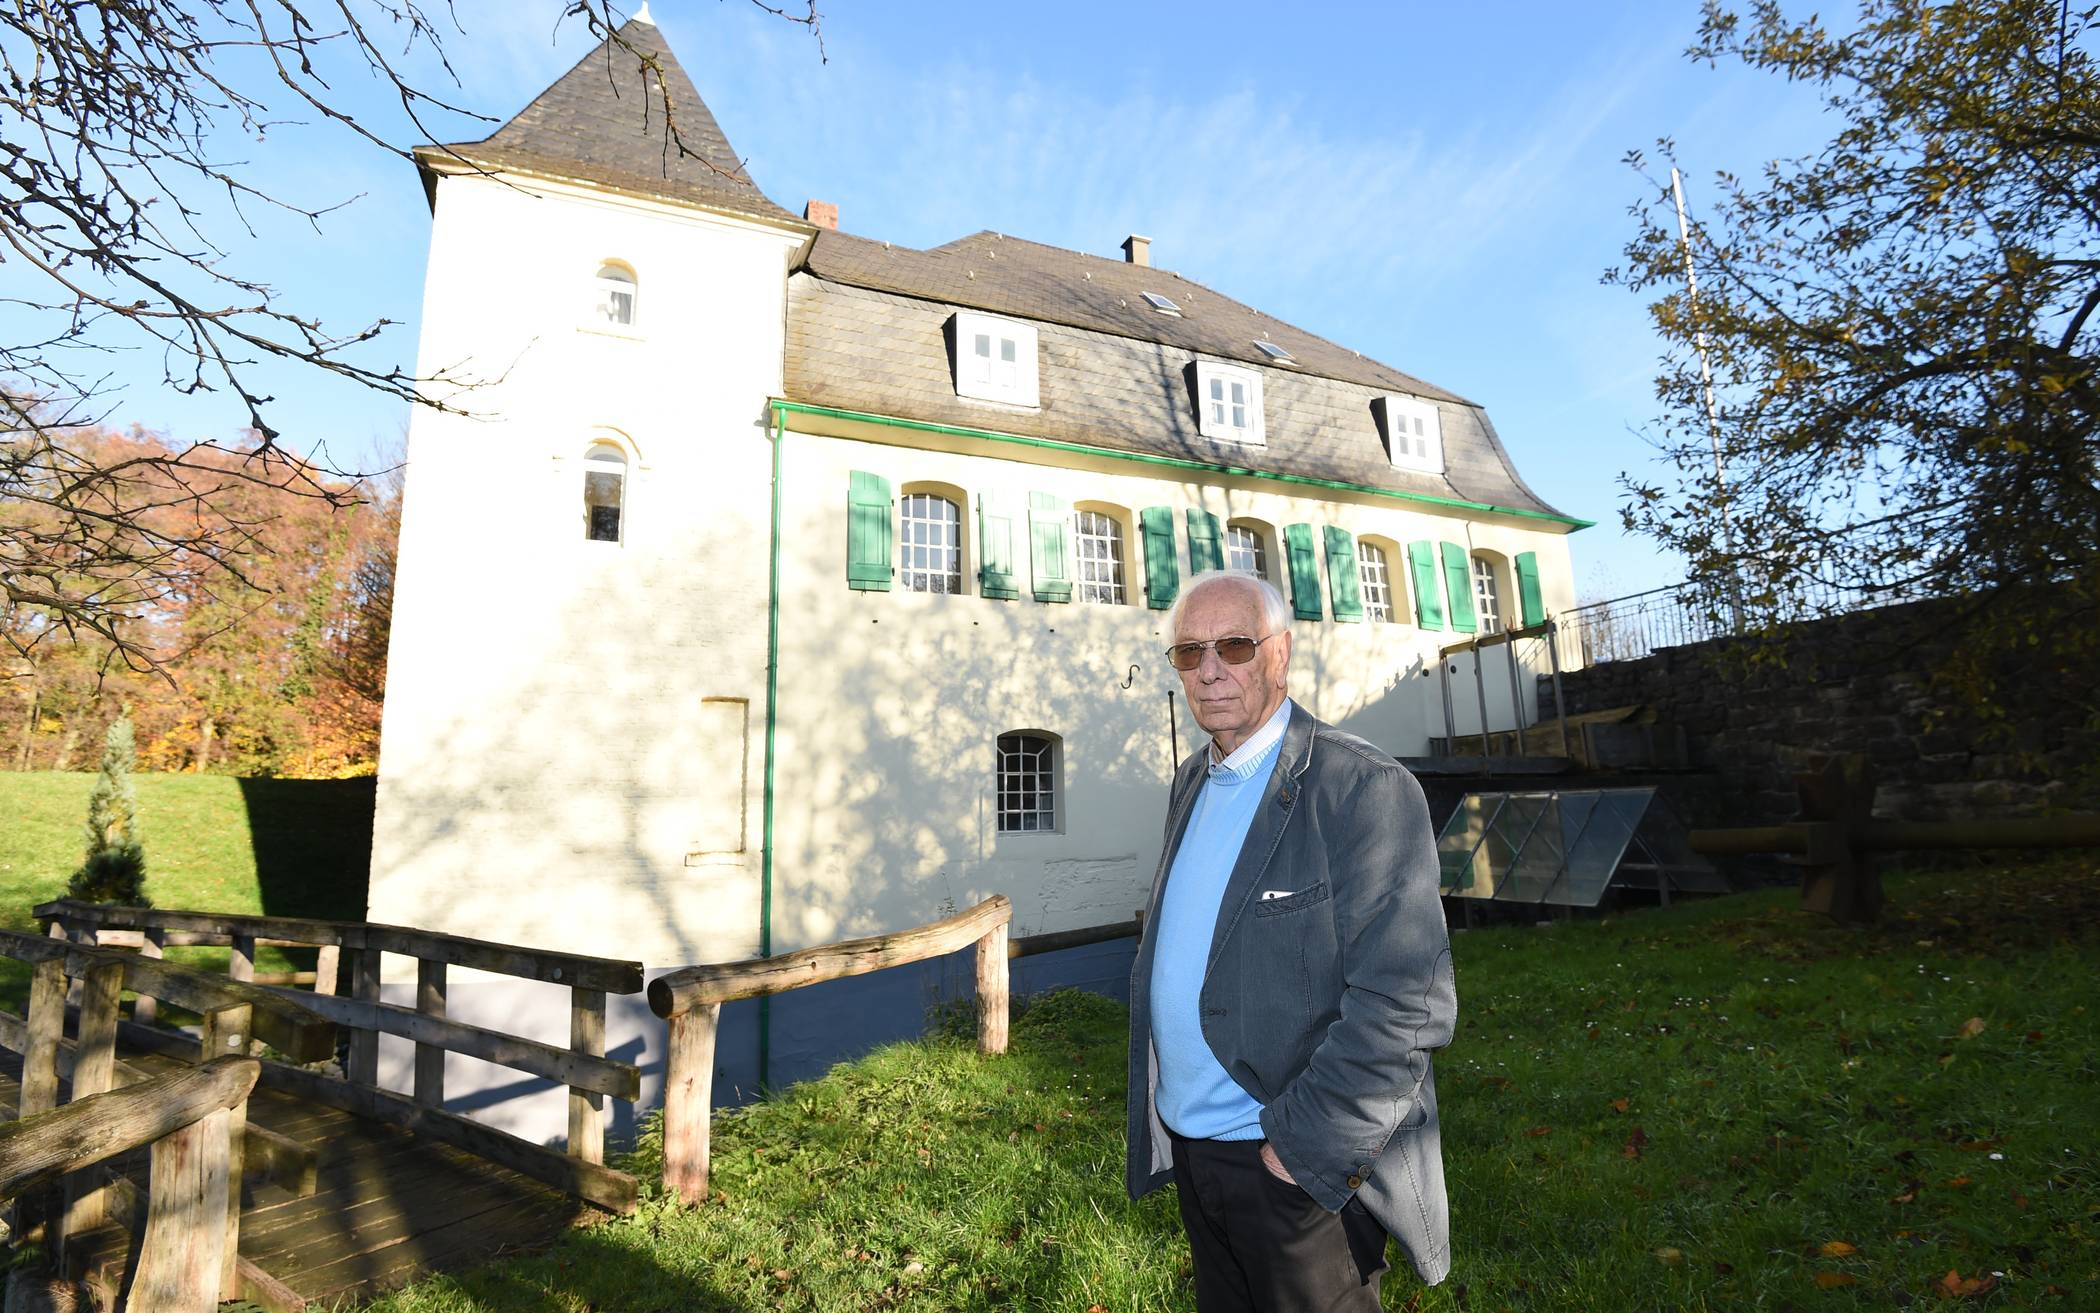  Die Goldberger Mühle ist für Hans-Günther Kampen eine Herzensangelegenheit und deshalb wünscht er sich junge Menschen im Verein, die die historische Mühle ebenfalls zu ihrer Herzensangelegenheit machen. 